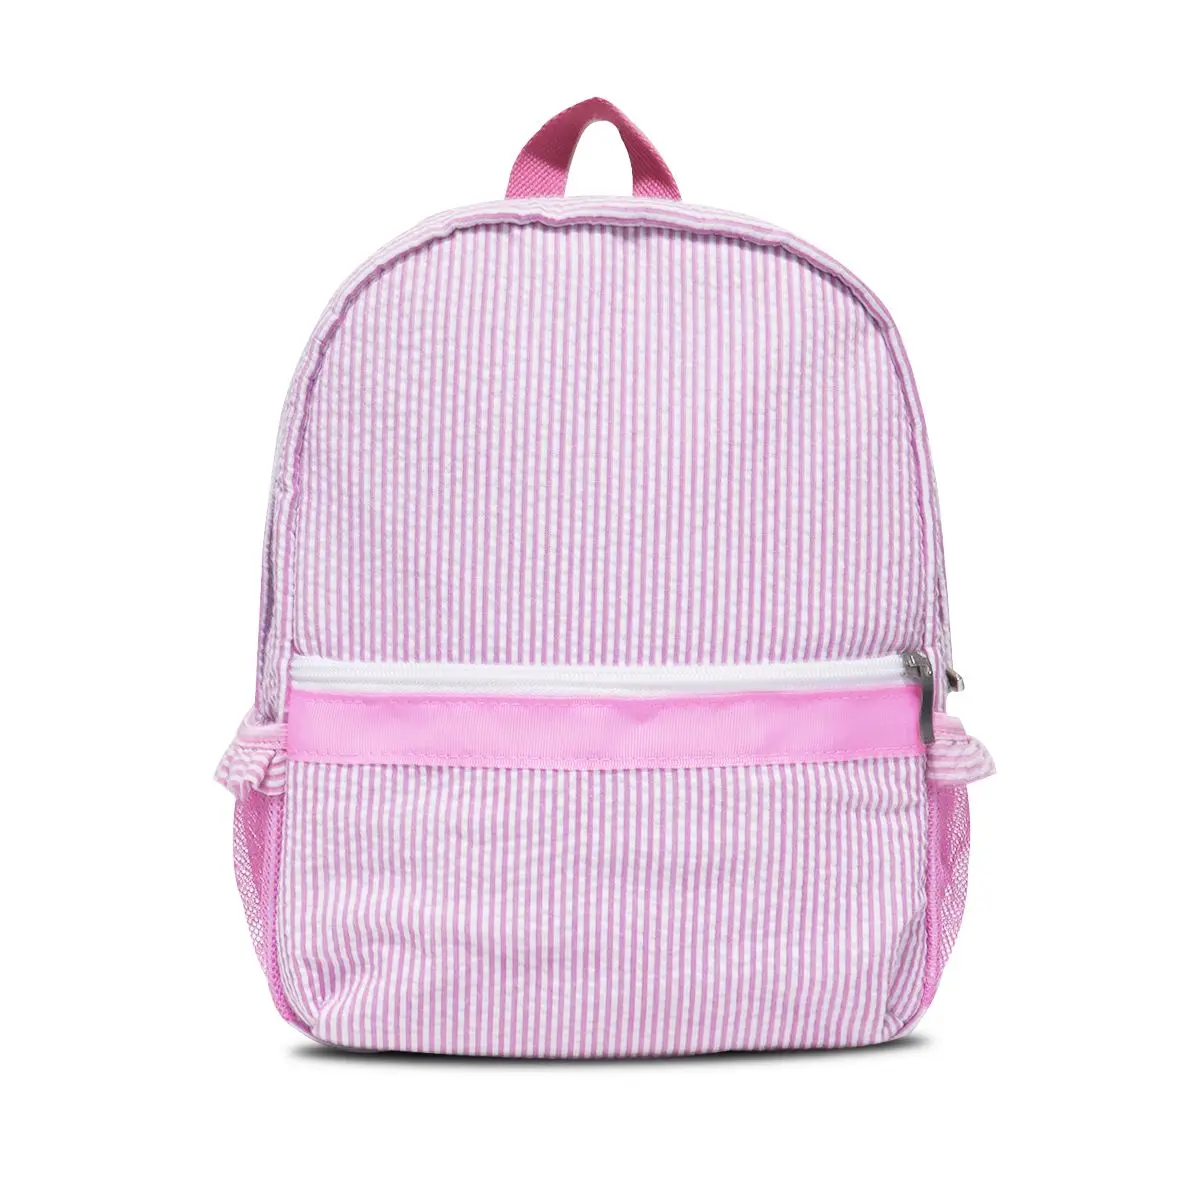 Todder School ruffle seersucker backpack travel set with cosmetic bag seersucker weekender duffle plaid gingham bags Dom103